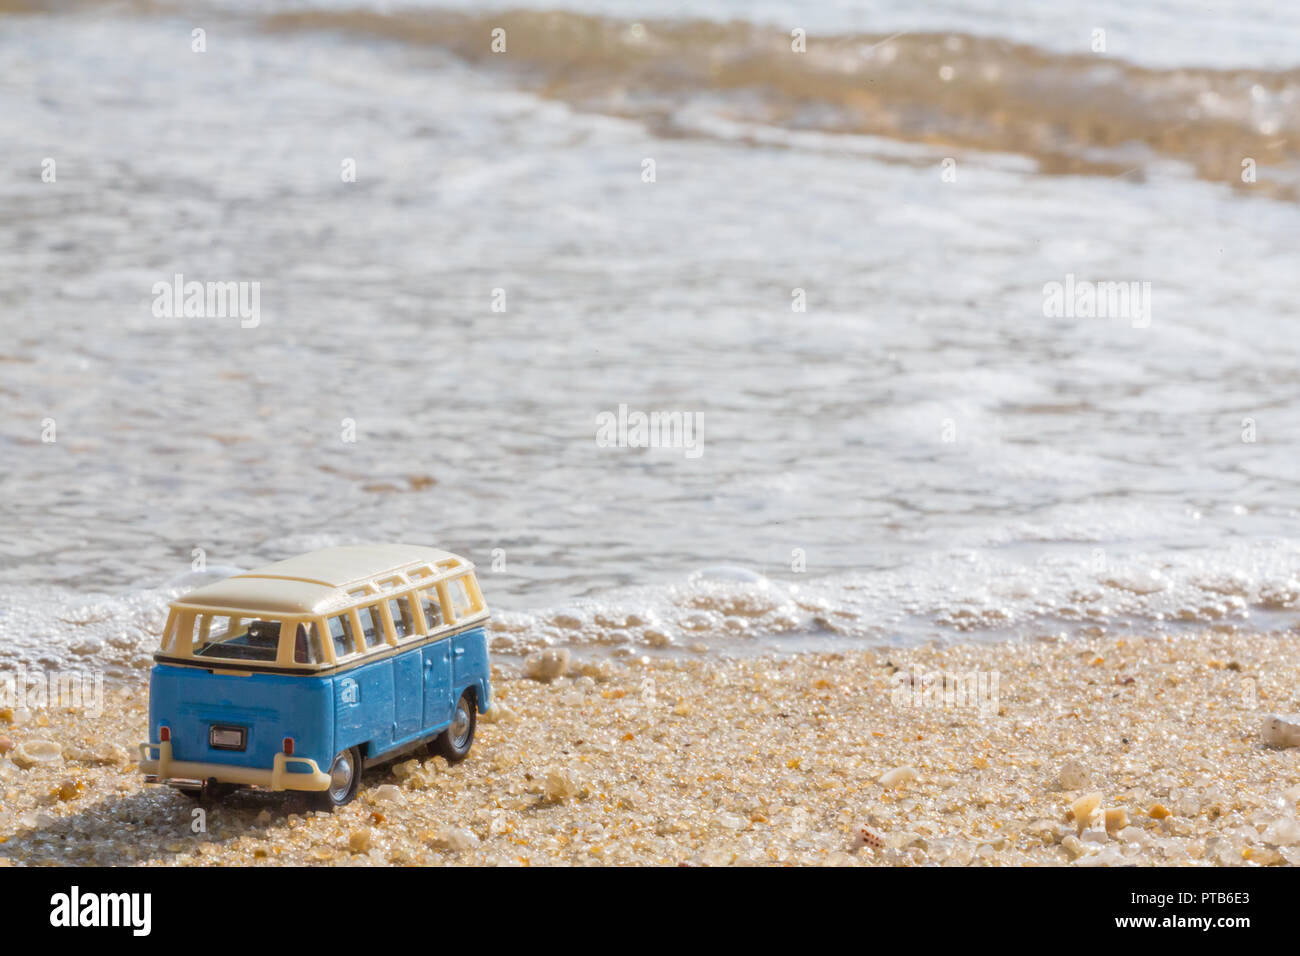 Sommer Urlaub auf der tropischen Insel auf dem Hintergrund Oldtimer van bus Volkswagen mit Koffer, schöne Natur mit Meer Ozean Wasser Stockfoto